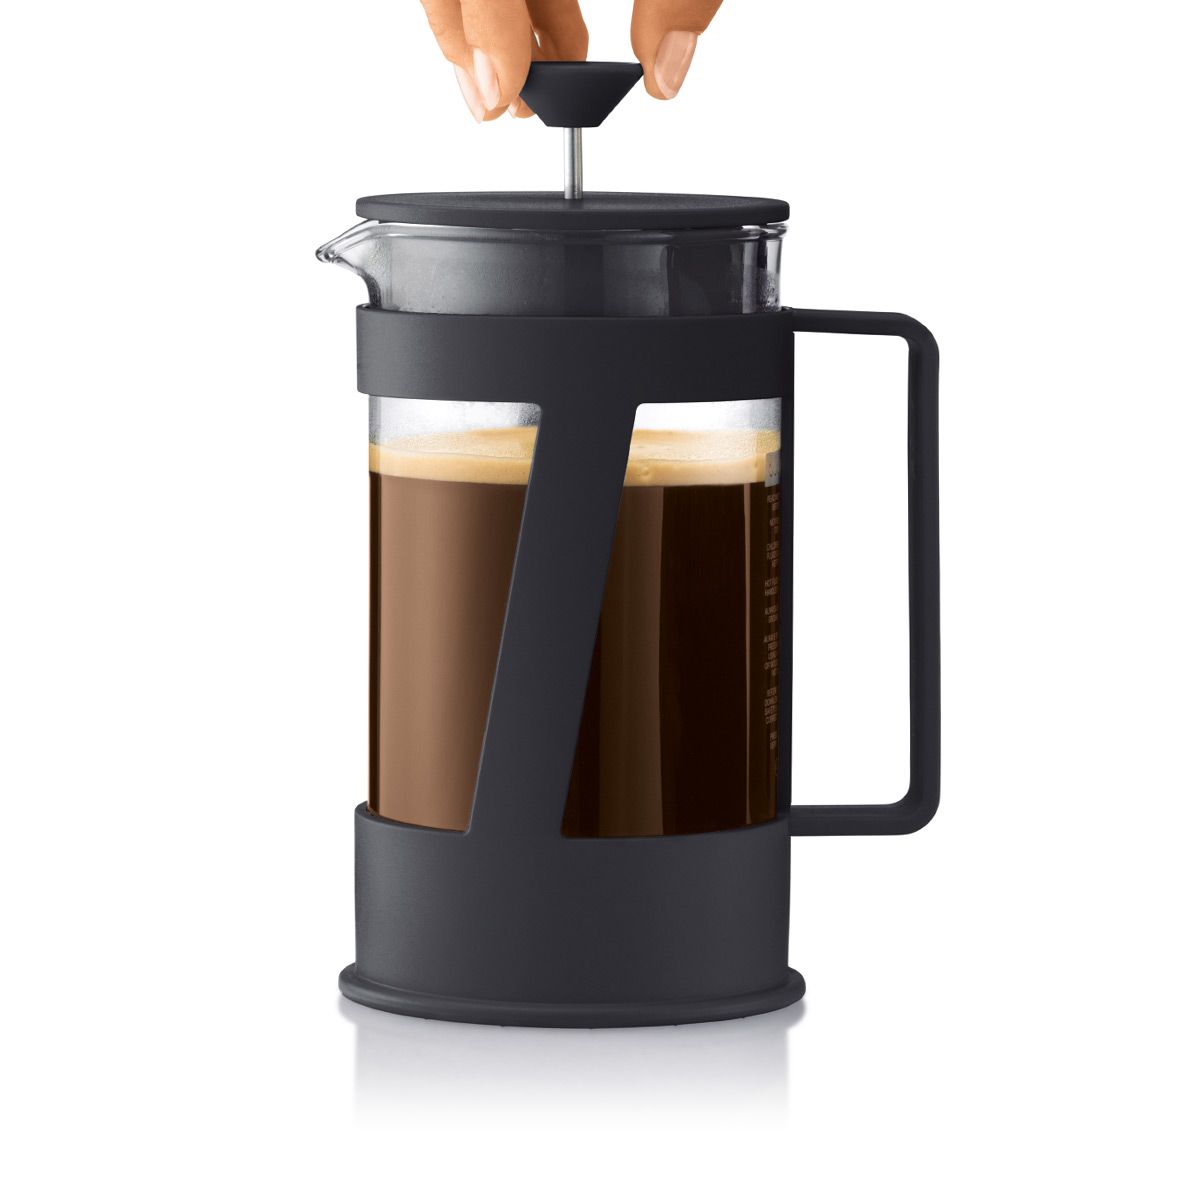 Bodum crema kaffemaskine sort, 8 kopper